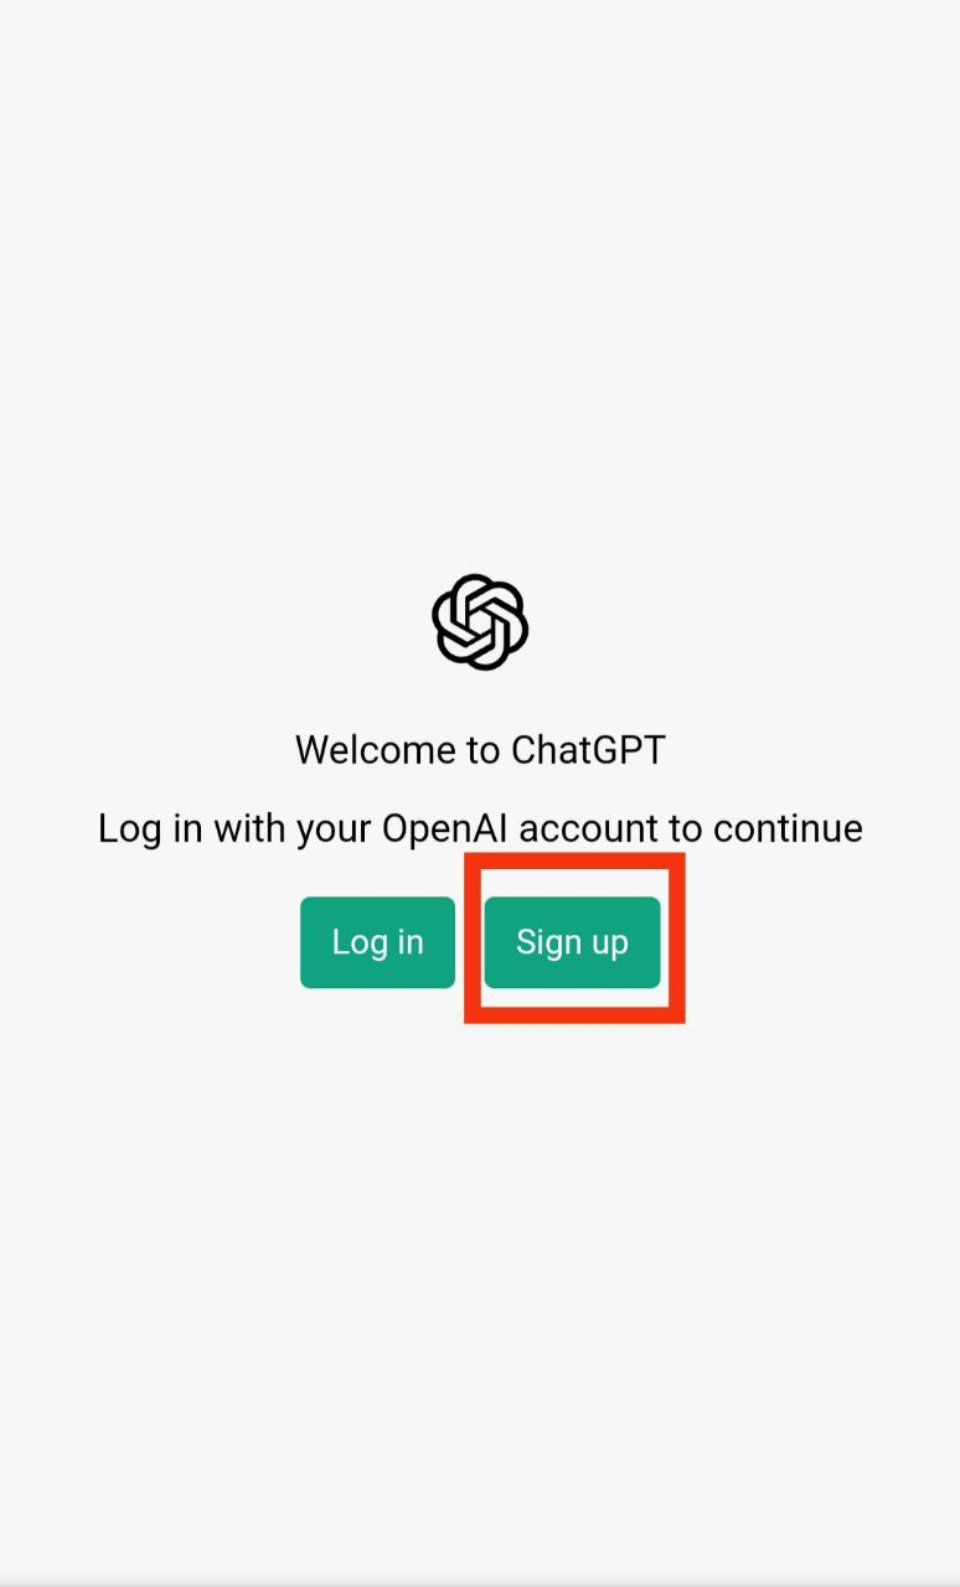 інструкція з користування ChatGPT